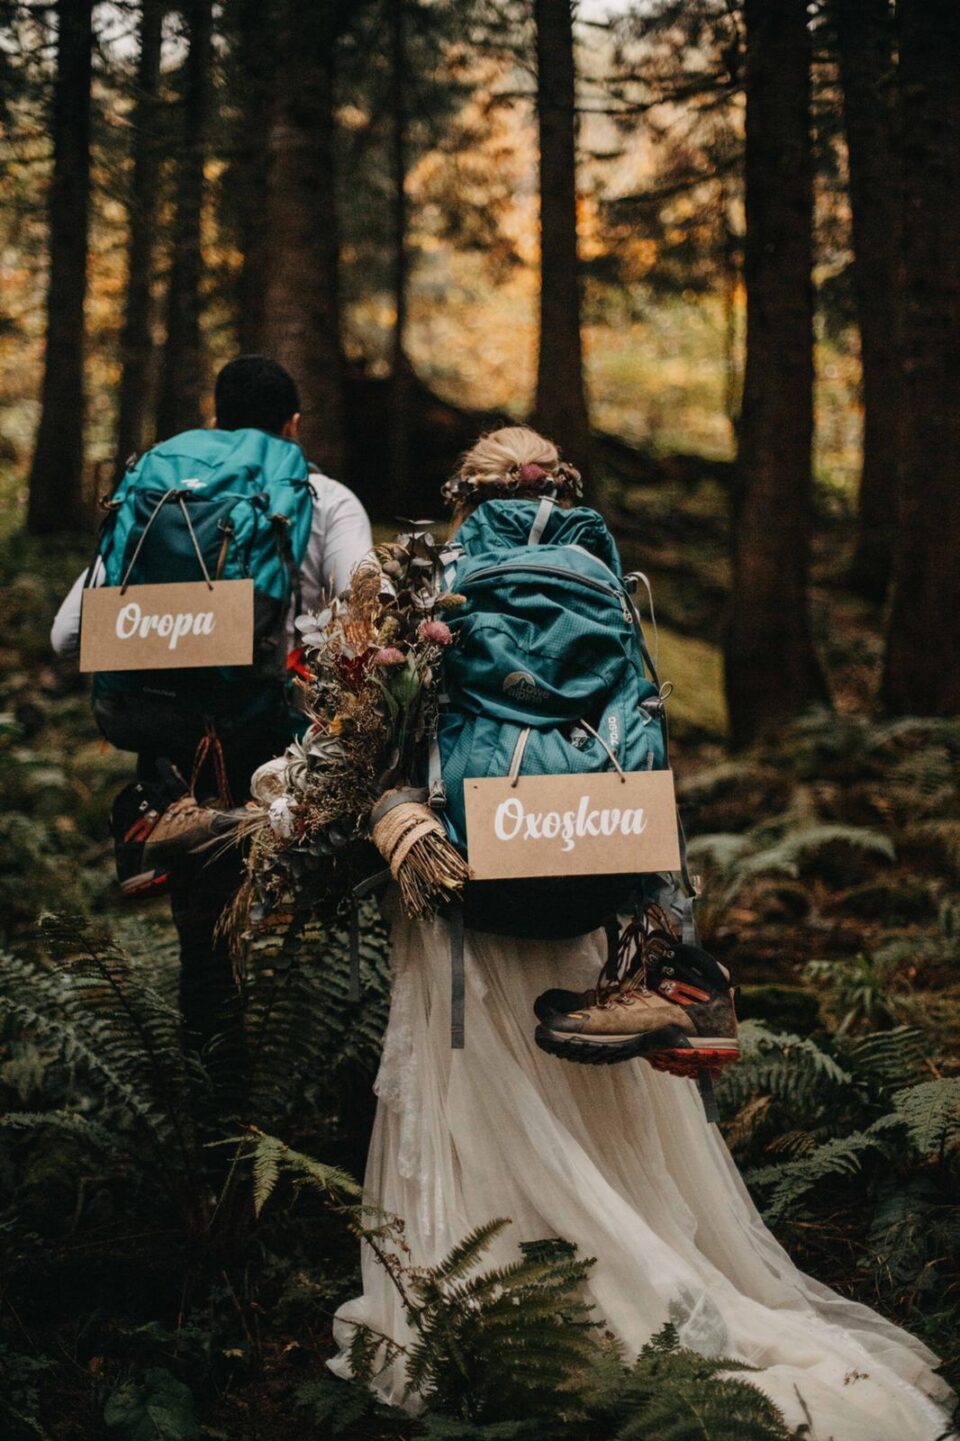 Ein lasisches Pärchen von hinten fotografiert. Sie tragen Hochzeitstracht und dazu Wanderrucksäcke. 